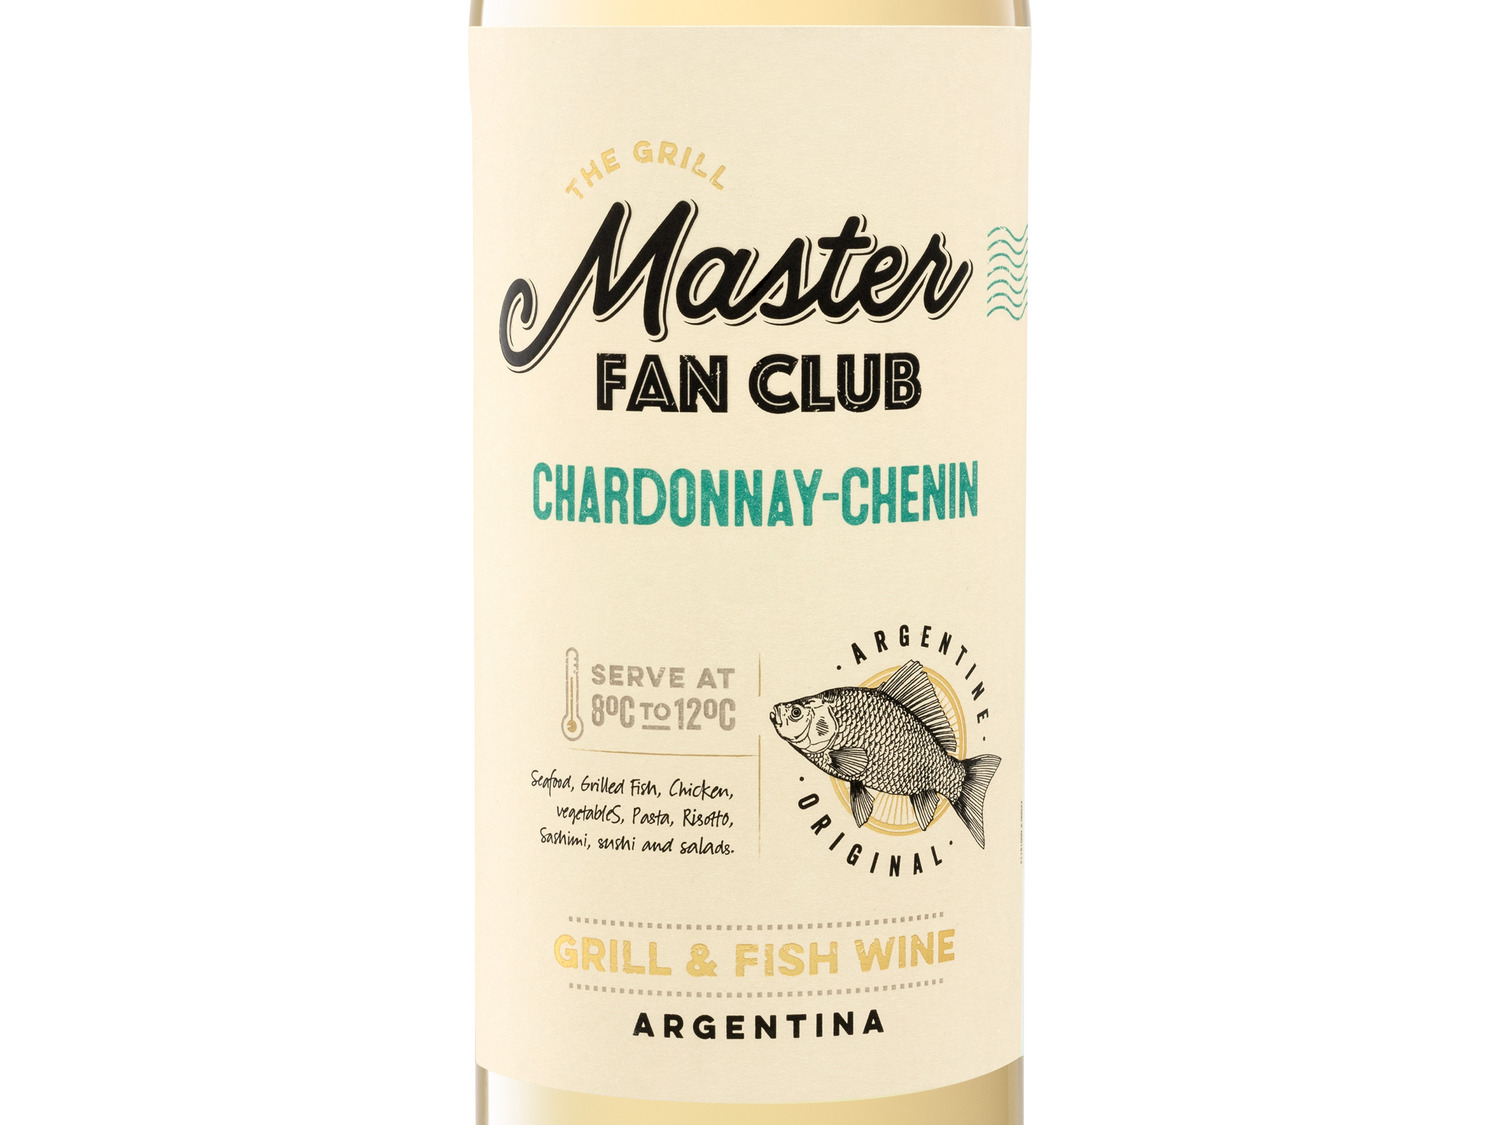 Grill Masters Chardonnay-Chenin Club Argentinien t… Fan